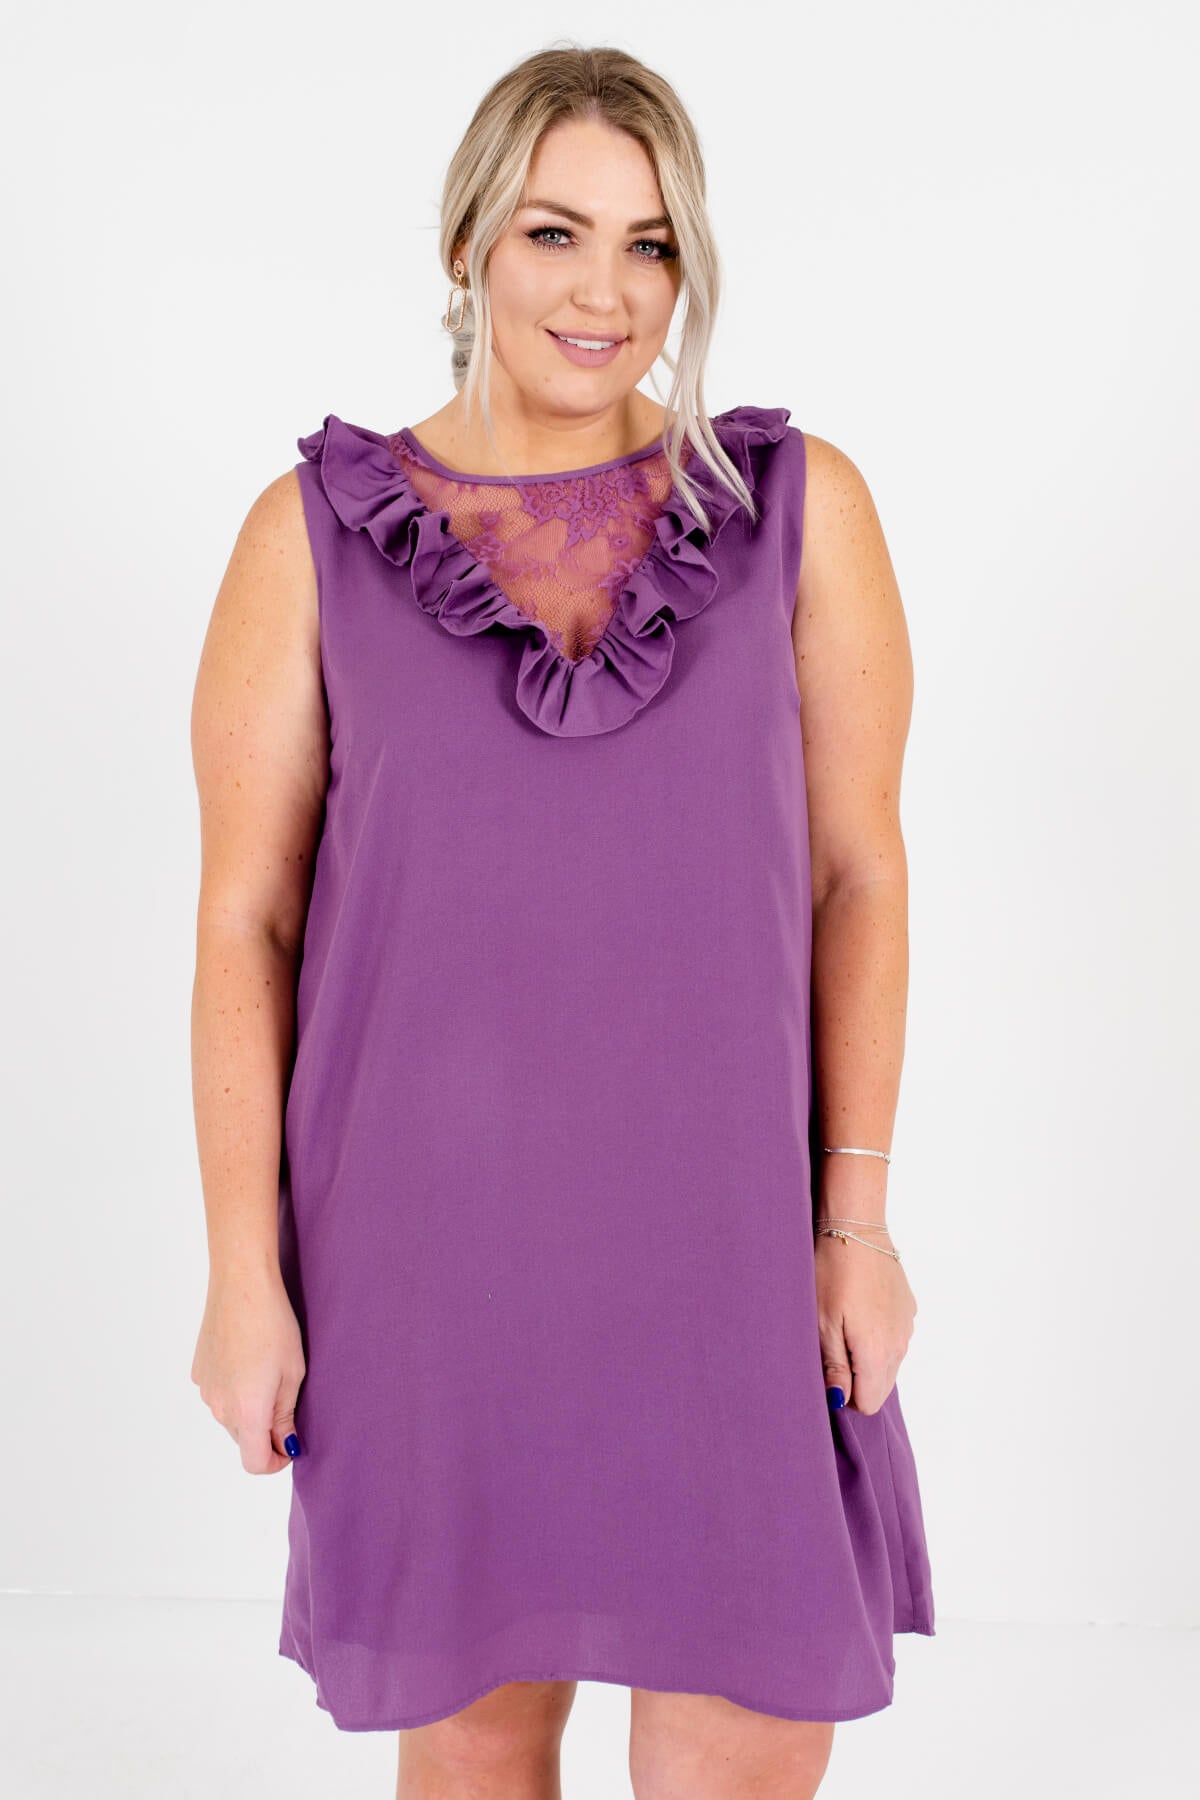 Purple Semi-Sheer Floral Lace Neckline Plus Size Boutique Mini Dresses for Women